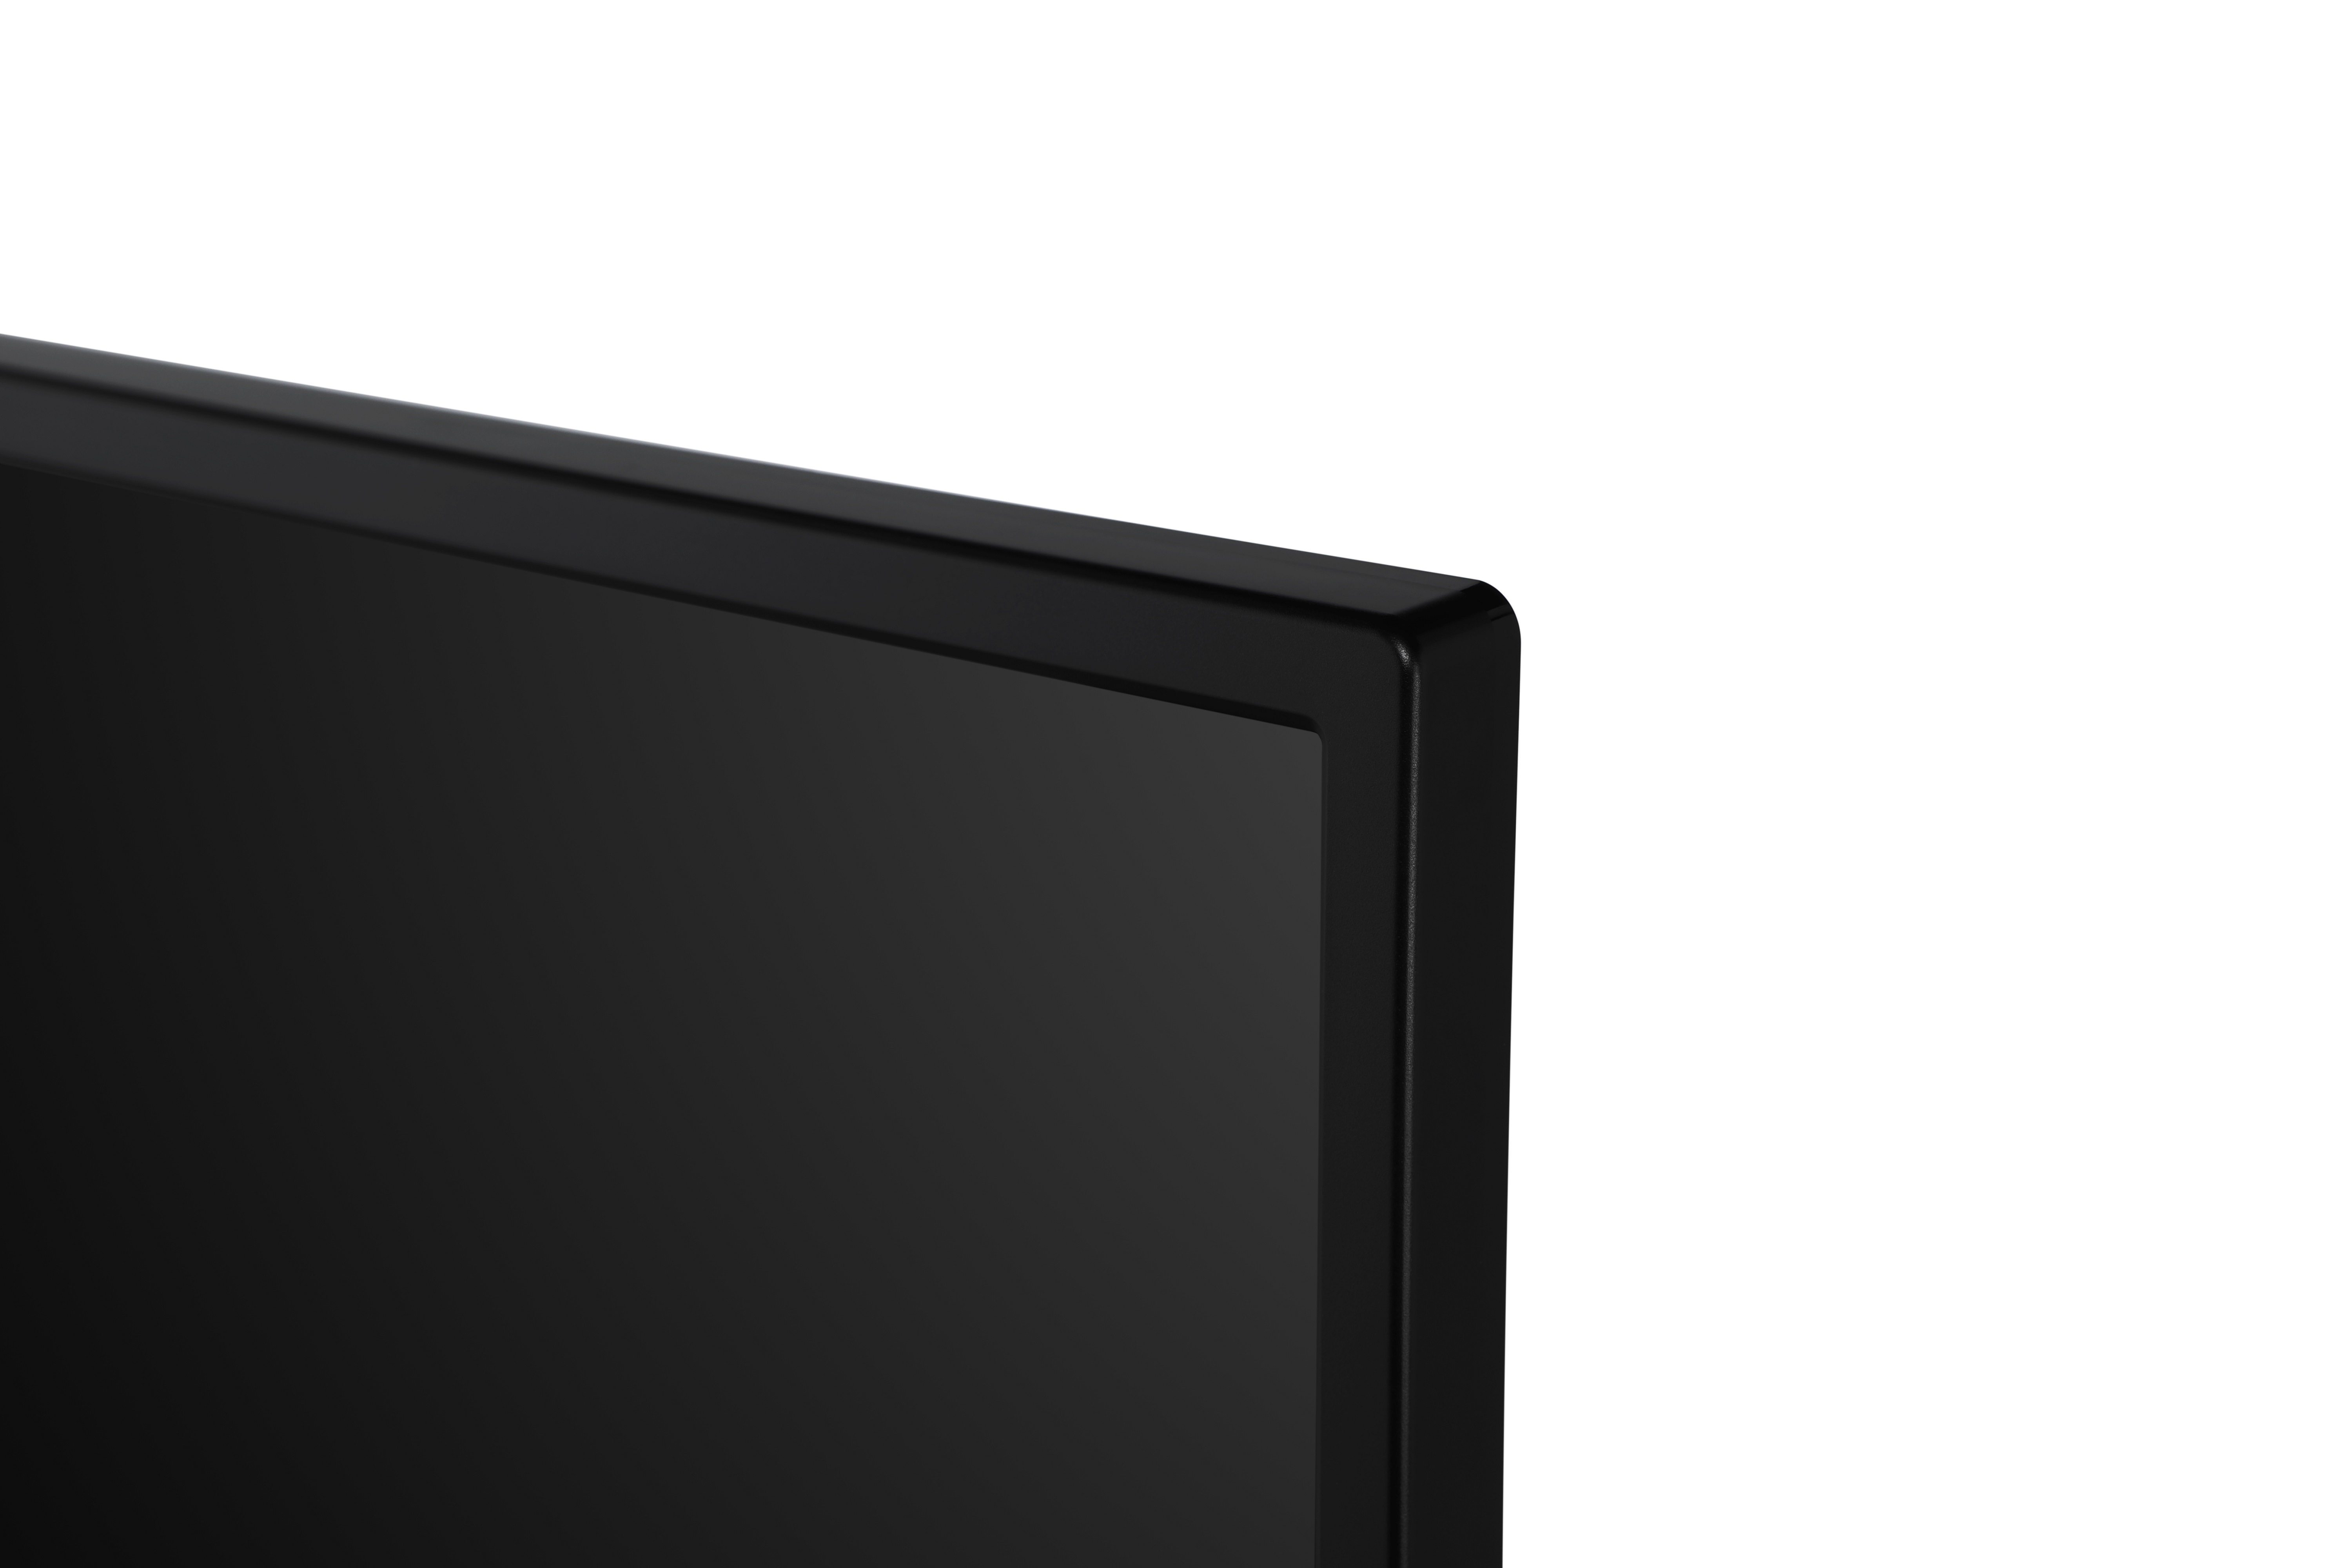 43HAK6150 (Flat, TV Chromecast 109 4K, Android Zoll 43 cm, SMART / HITACHI UHD mit TV) LED